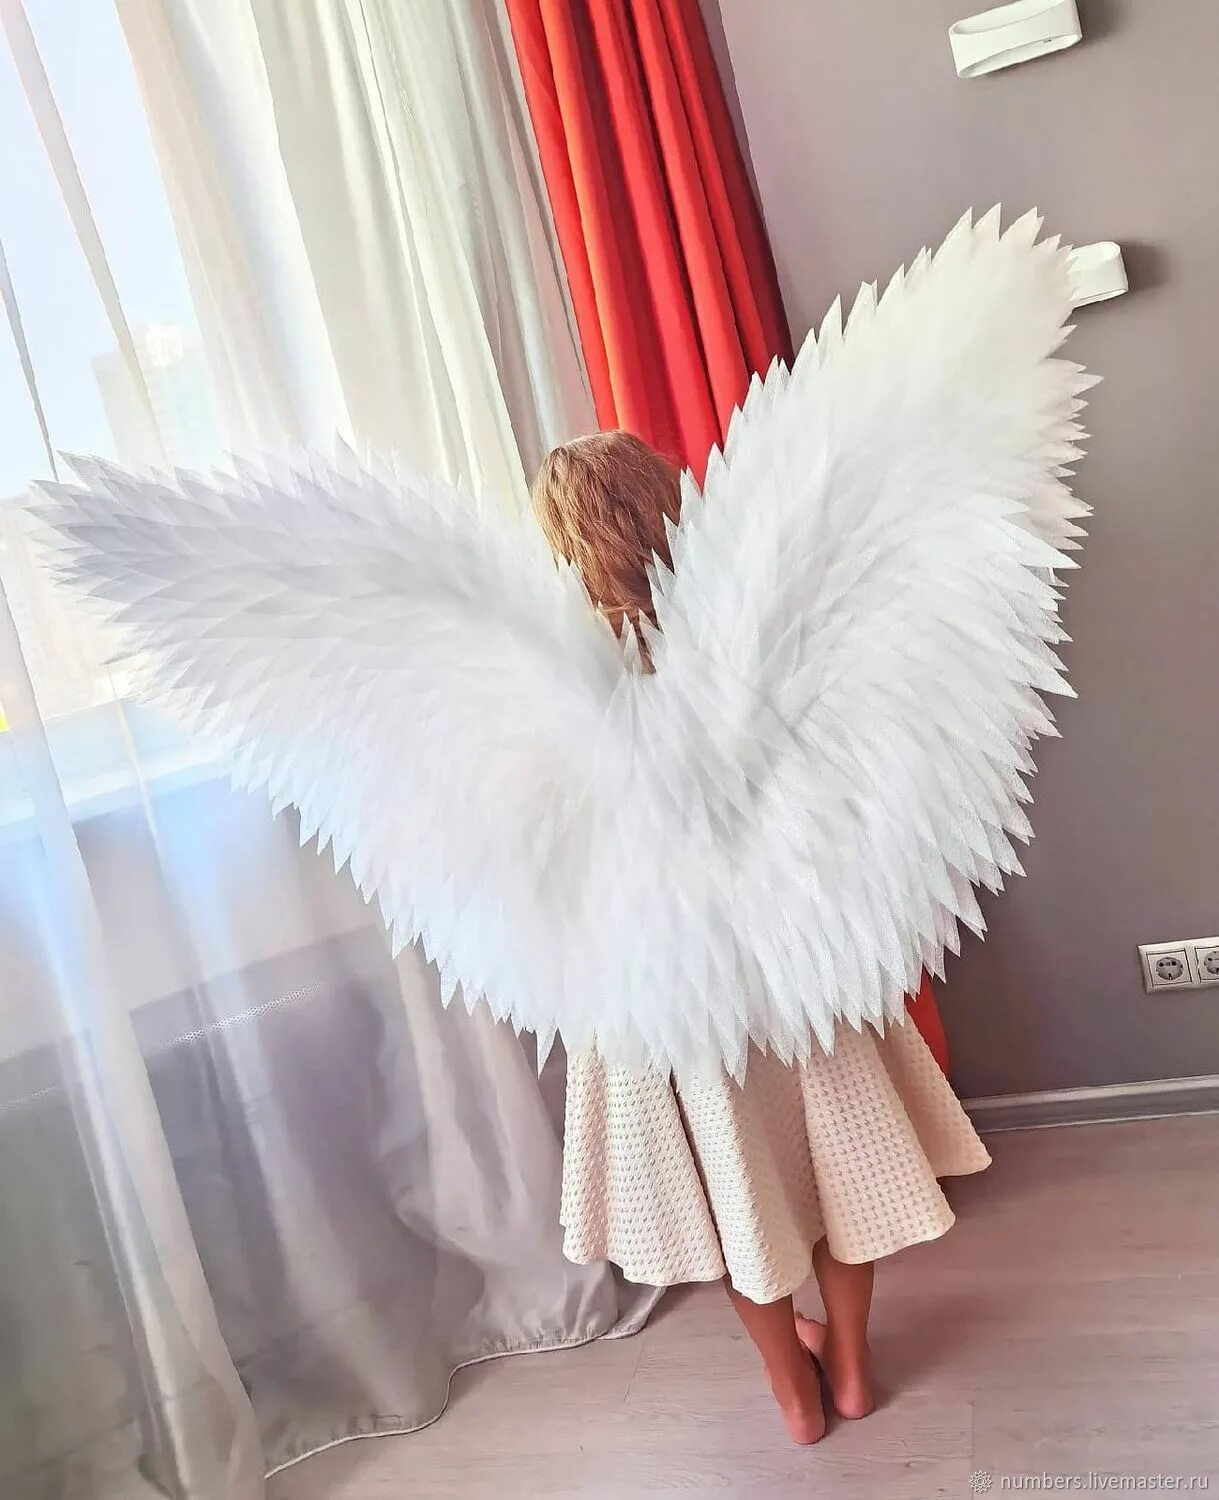 Крылья купить магазин. Крылья ангела набор. Крылья ангела для магазина. Крылья ангела пенопласт. Крылья ангела Рязань.